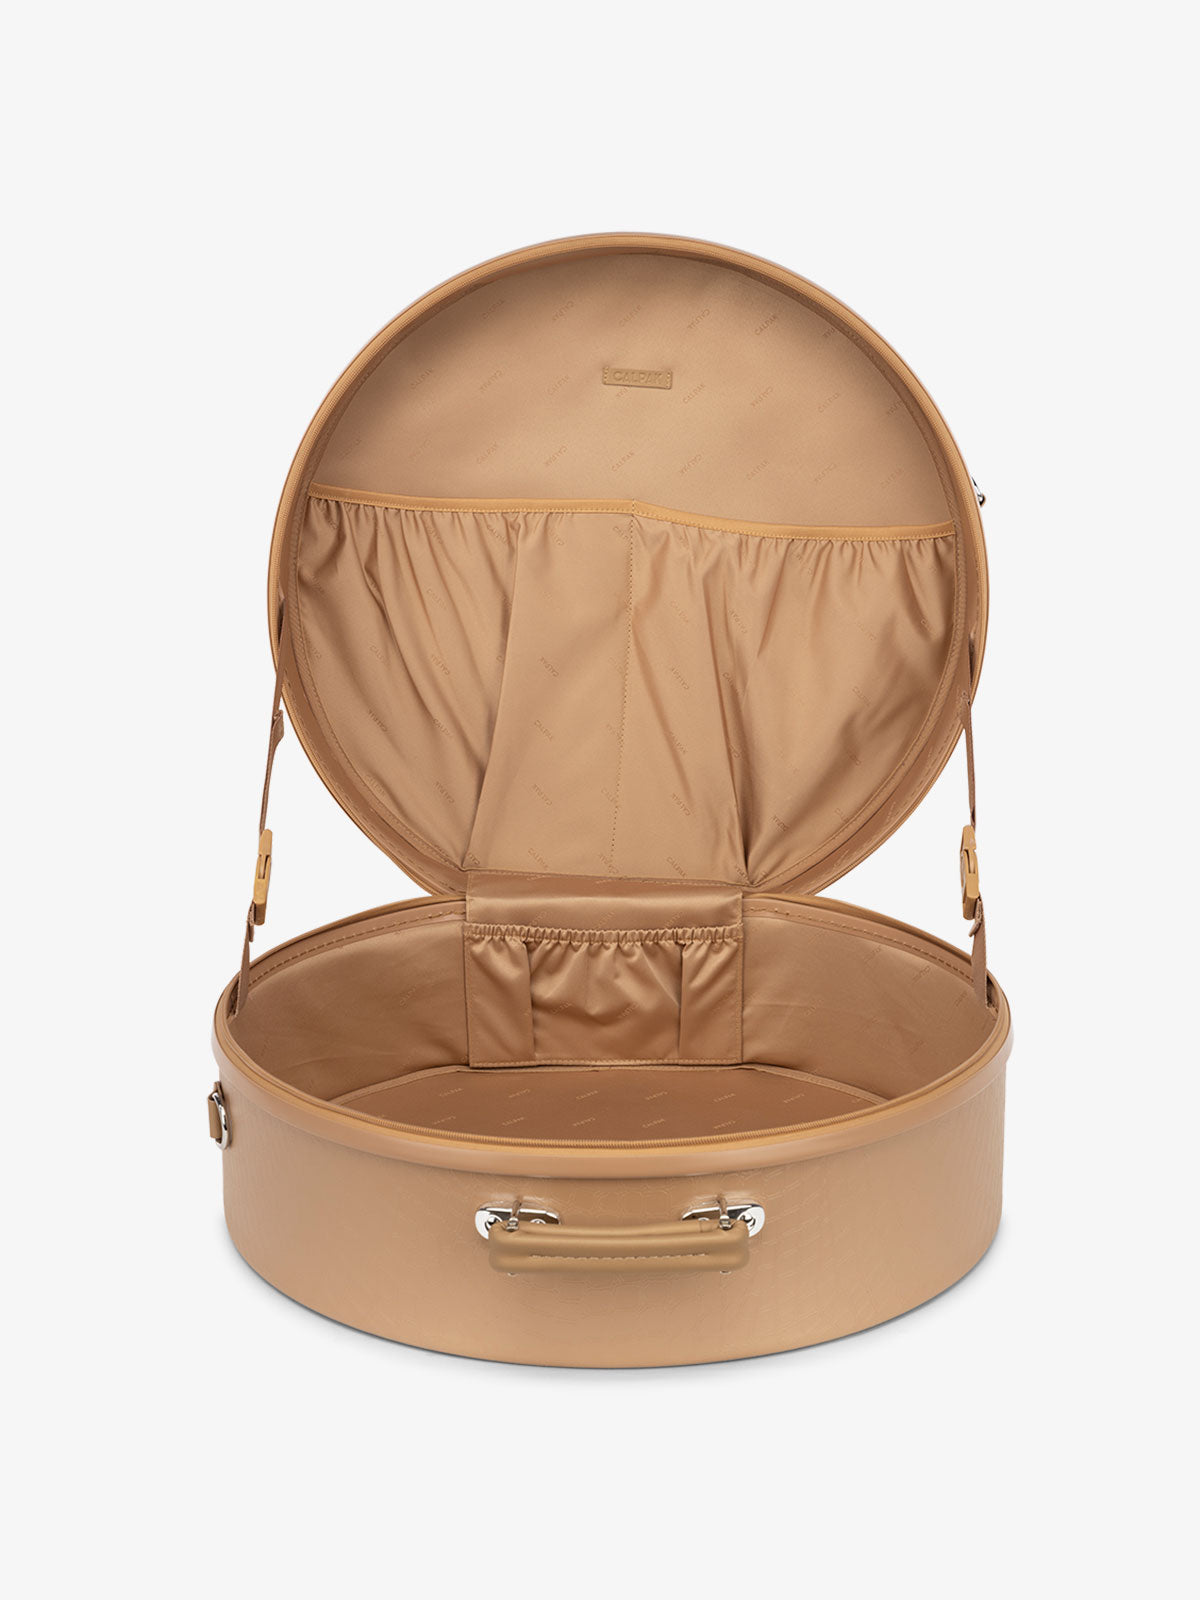 round travel hat box